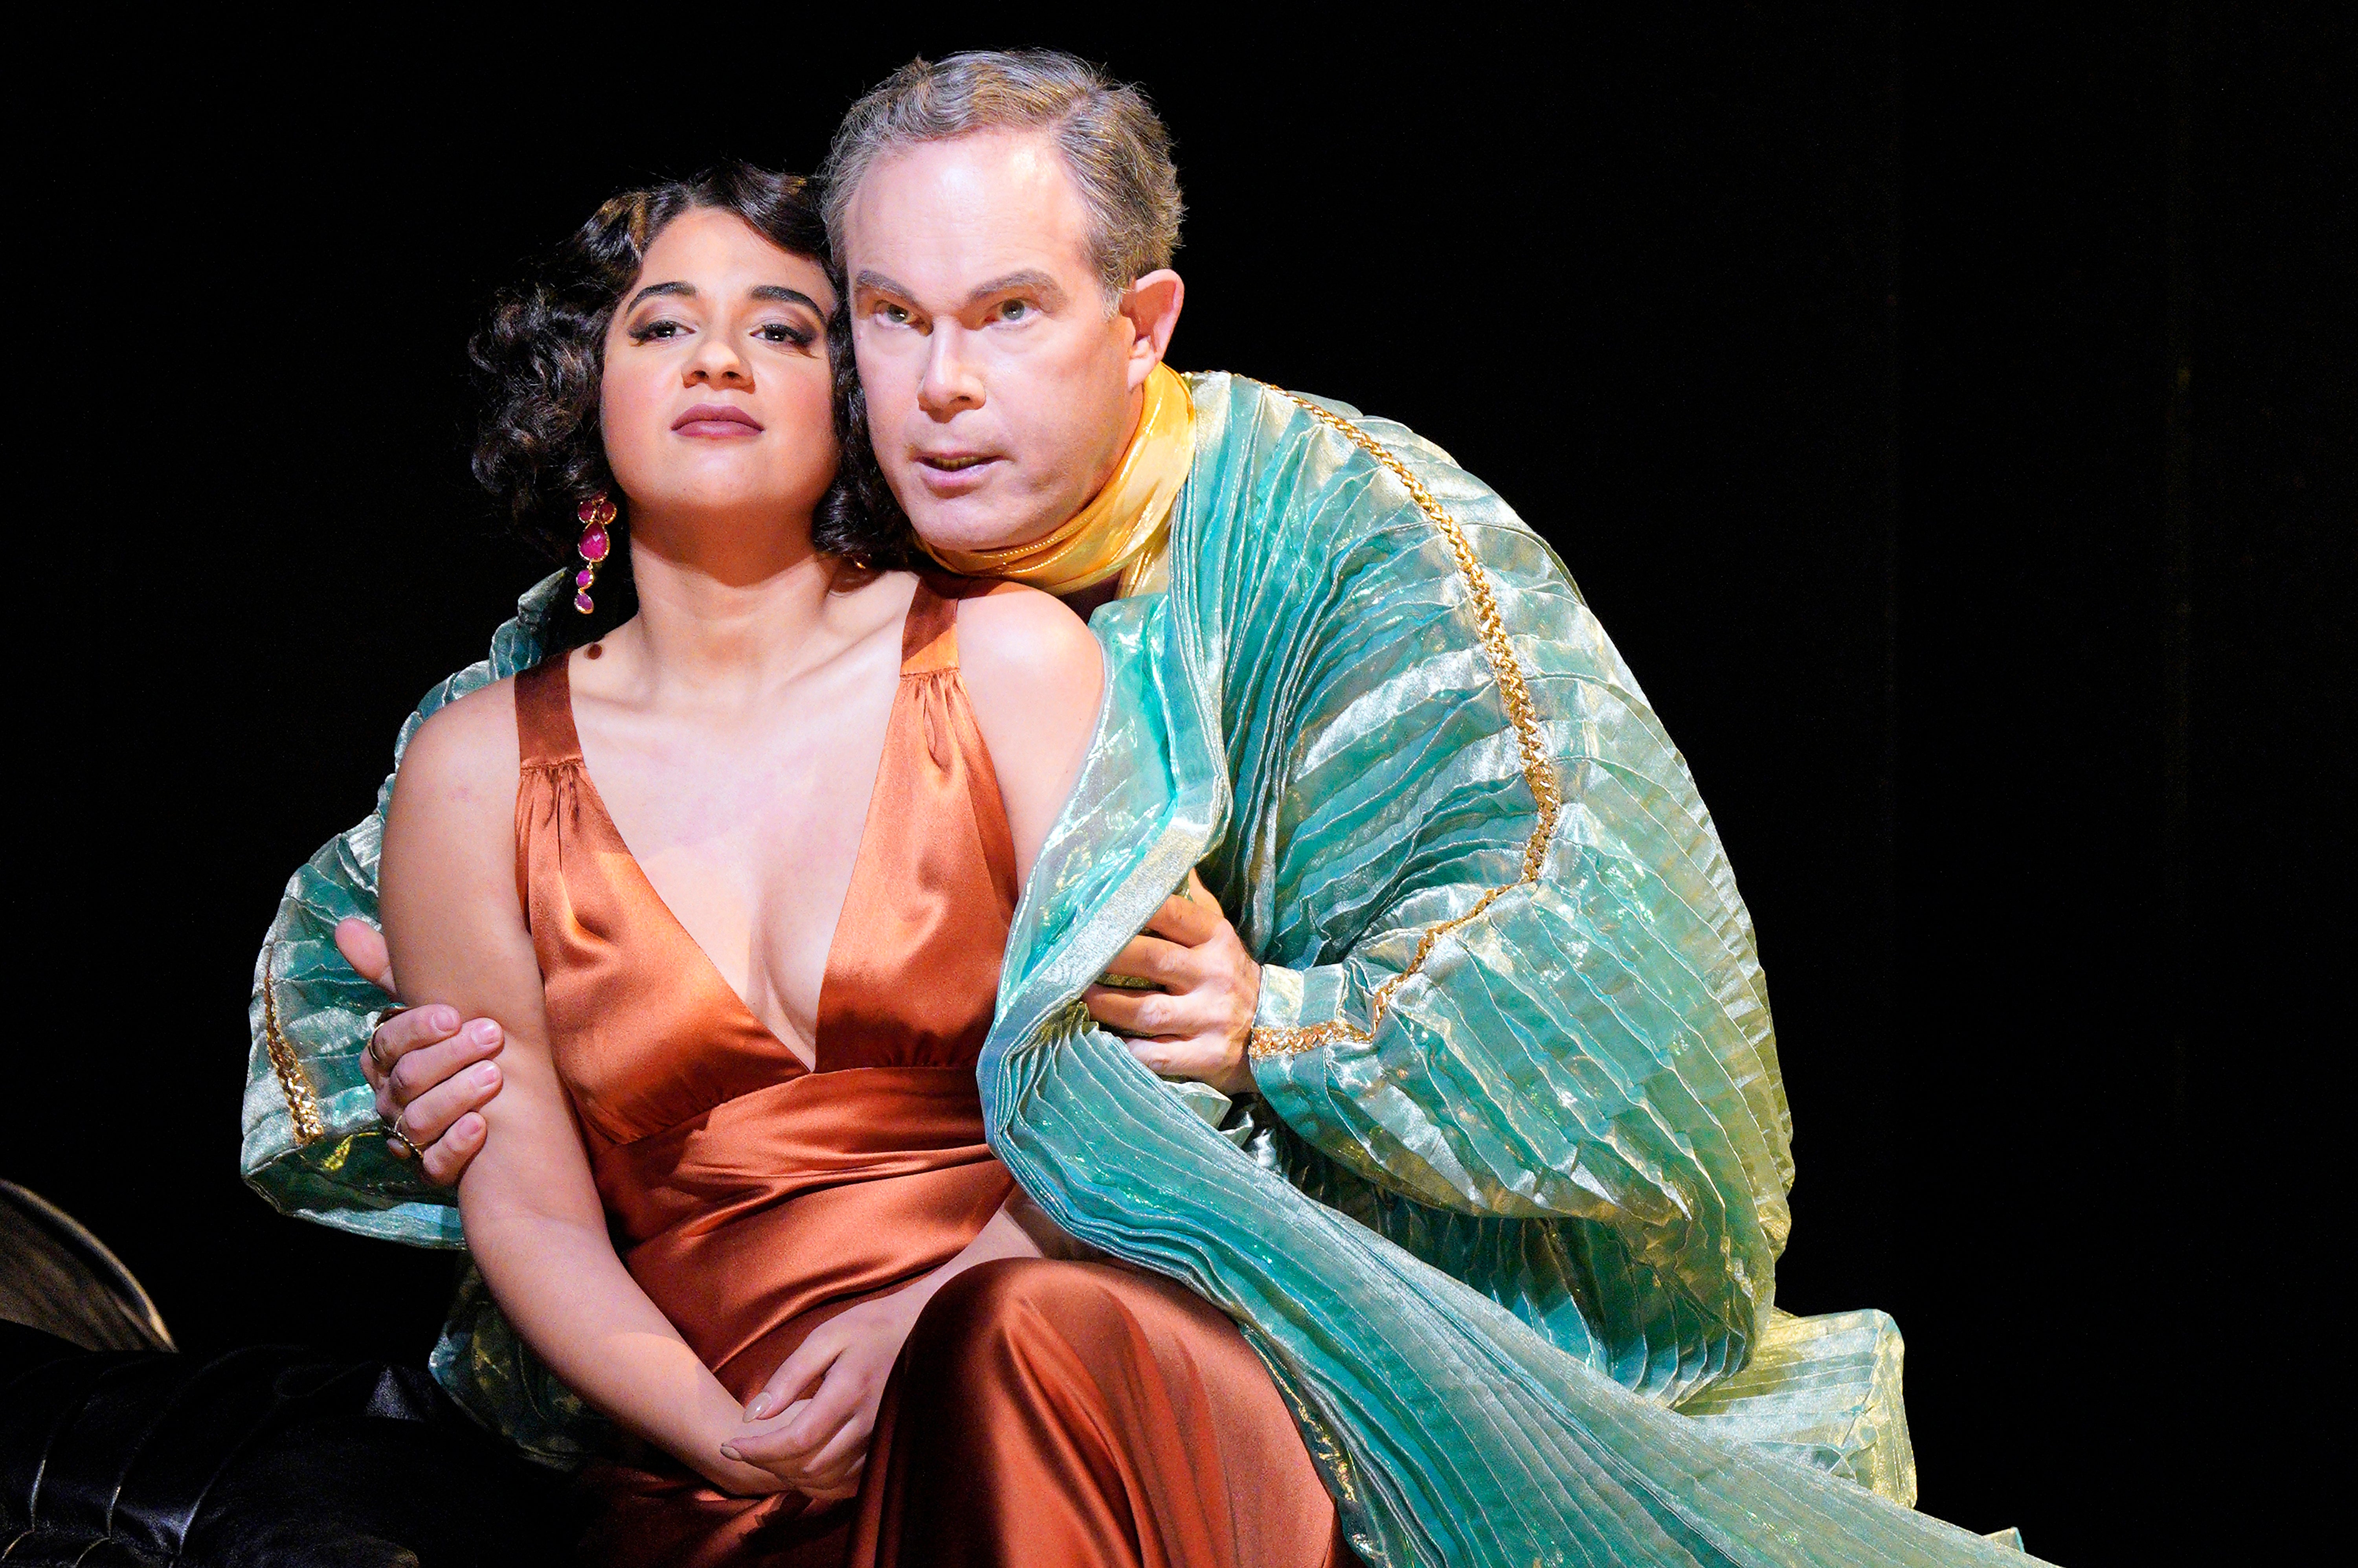 Opera Antony and Cleopatra